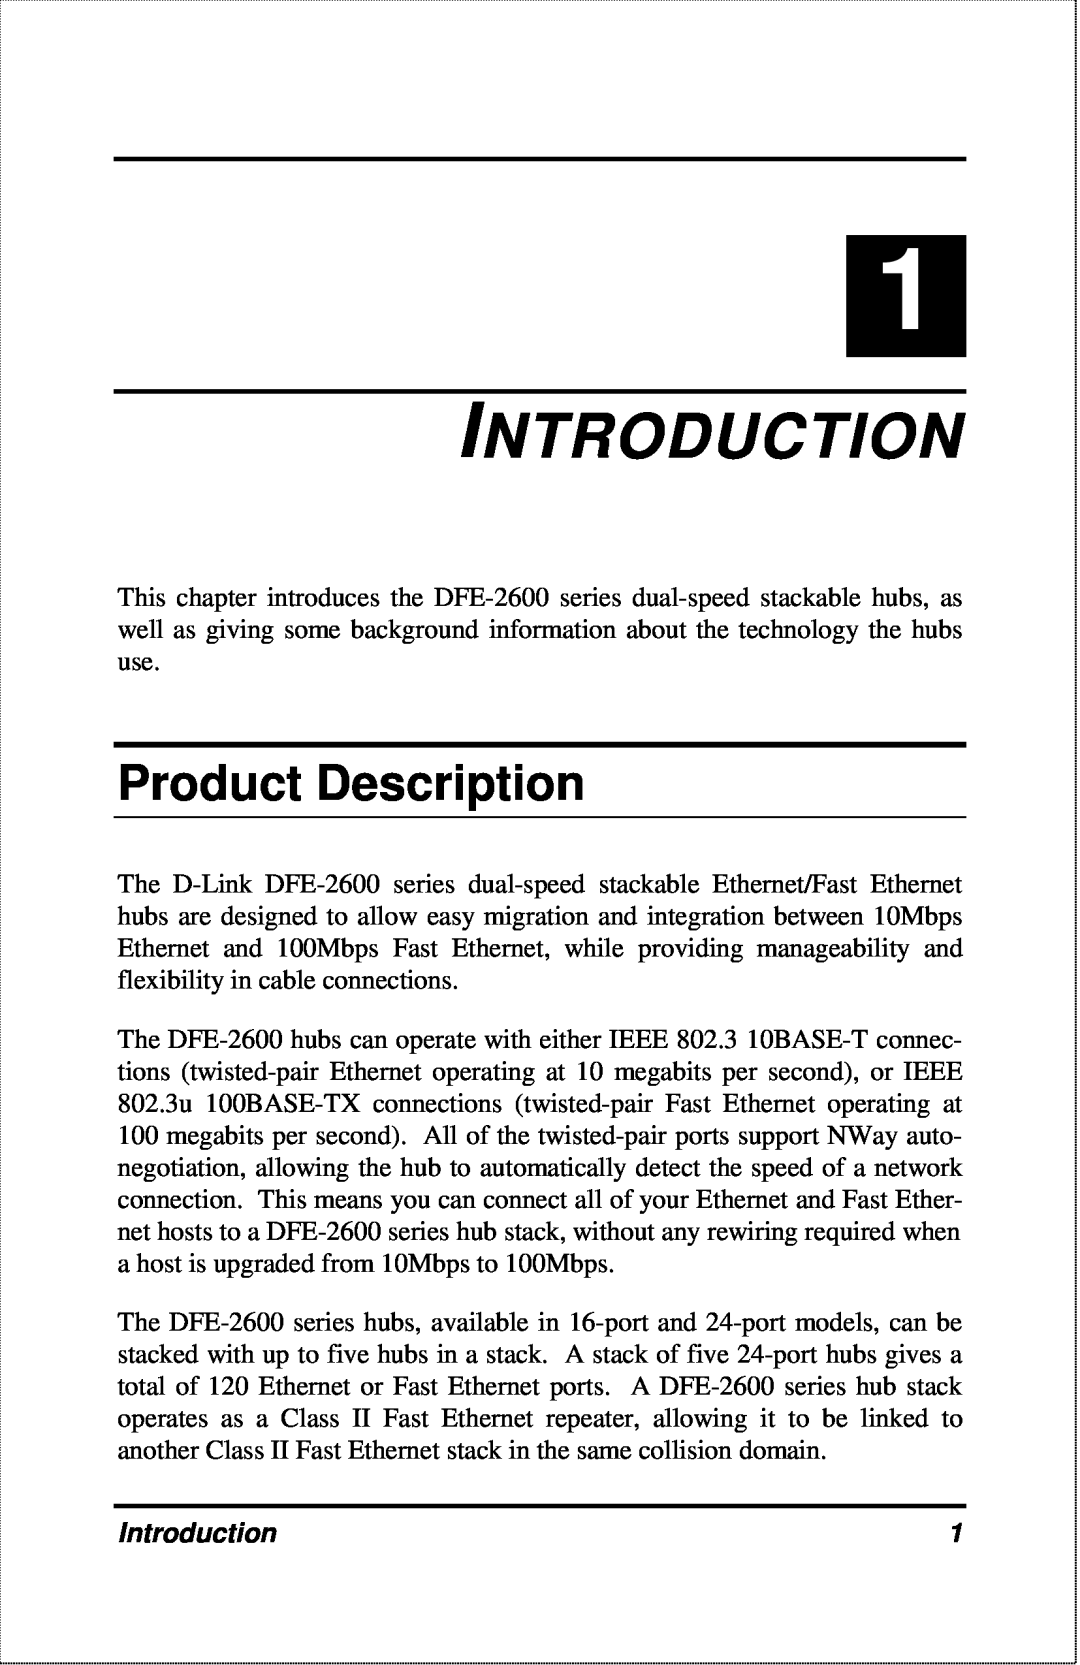 D-Link DFE-2600 manual Introduction, Product Description 